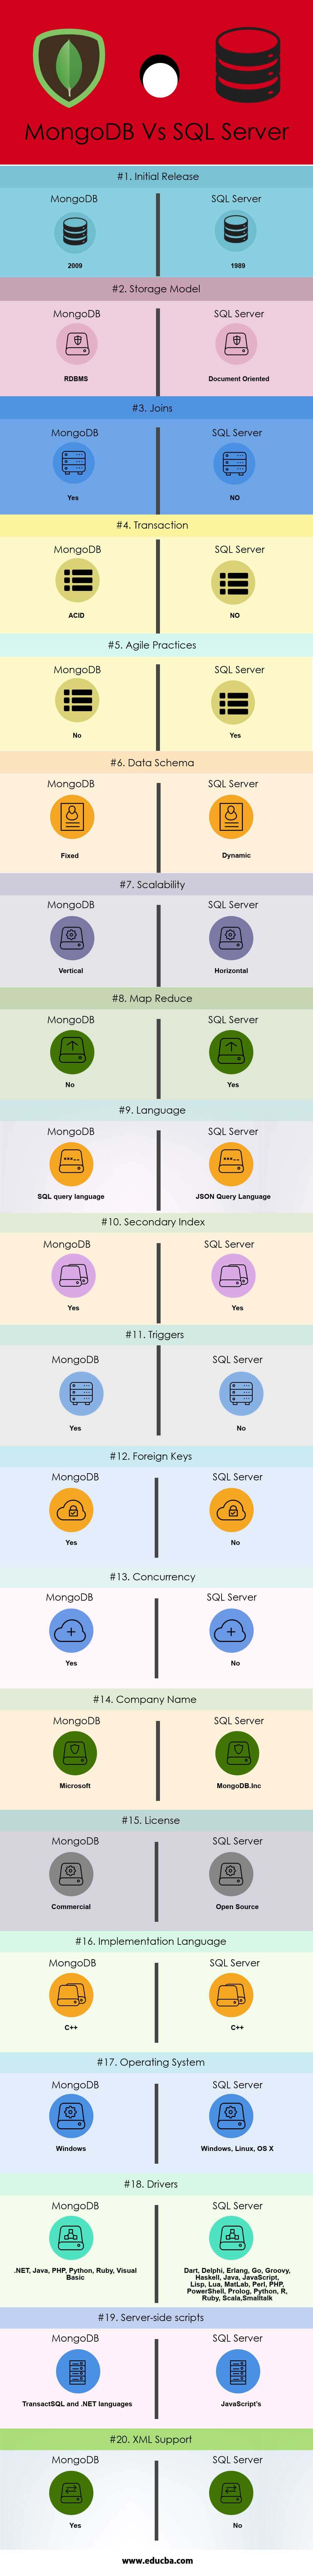 मोंगोडीबी बनाम एसक्यूएल सर्वर (इन्फोग्राफिक्स)